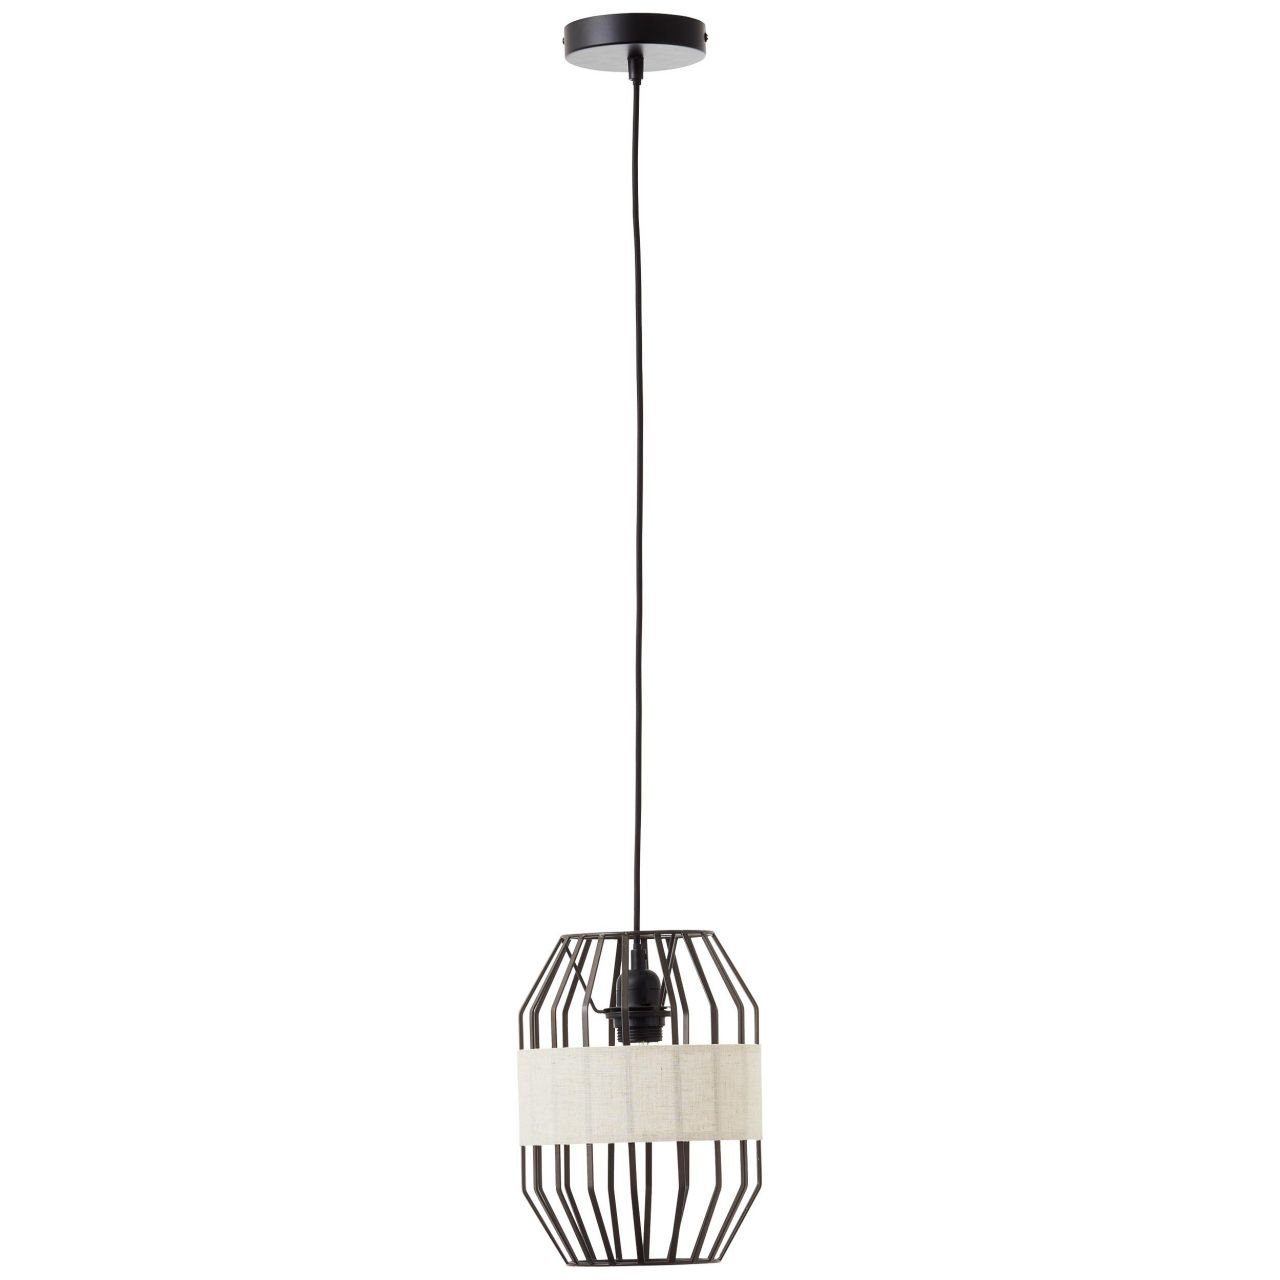 Slope, Pendelleuchte Lampe, 1x Slope Kabel Brilliant E27, Pendelleuchte 23cm schwarz/natur, 40W, A60,